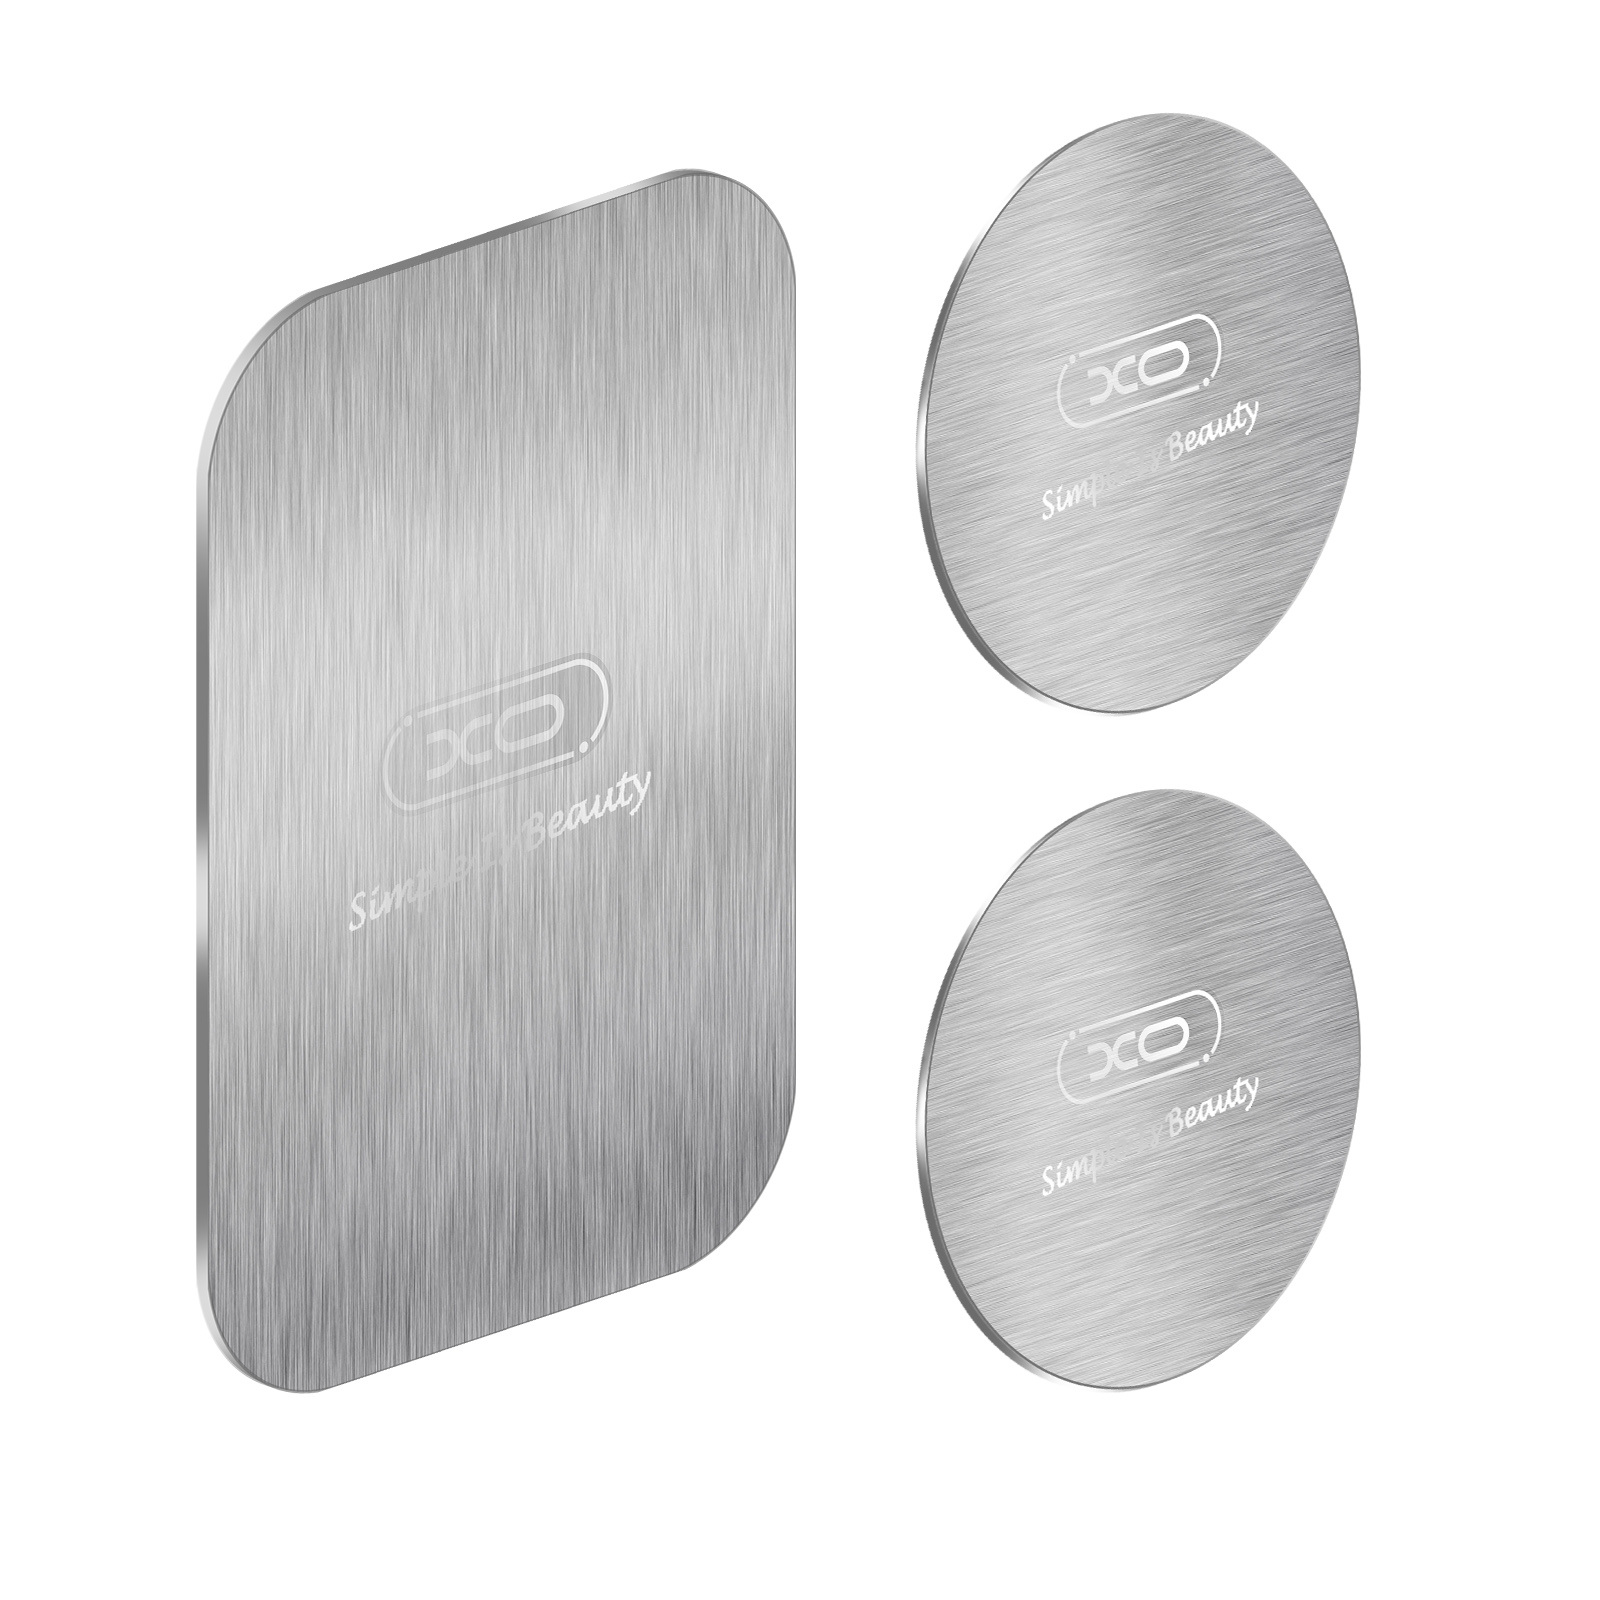 mit XO Aufkleberset 3x Silberplatten Magnethalter Silber kompatibel Y2 Magnetplatten, XO Handy-Halterungen